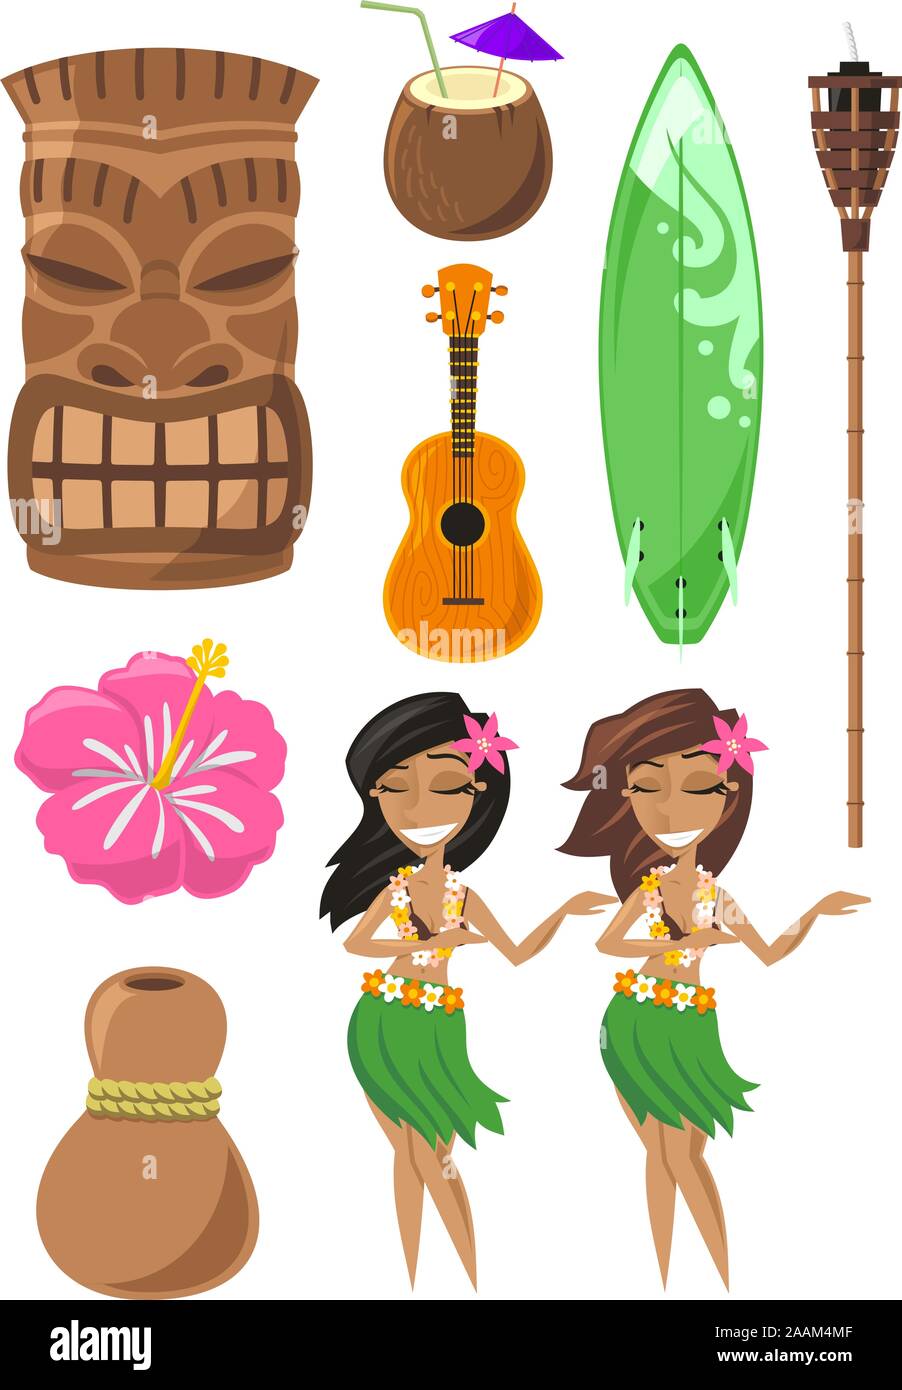 Hawaiian, Hawaii Set with tiki, tiki god, hula dancer, board, surf board, ukelele, coconut. Vector illustration cartoon. Stock Vector